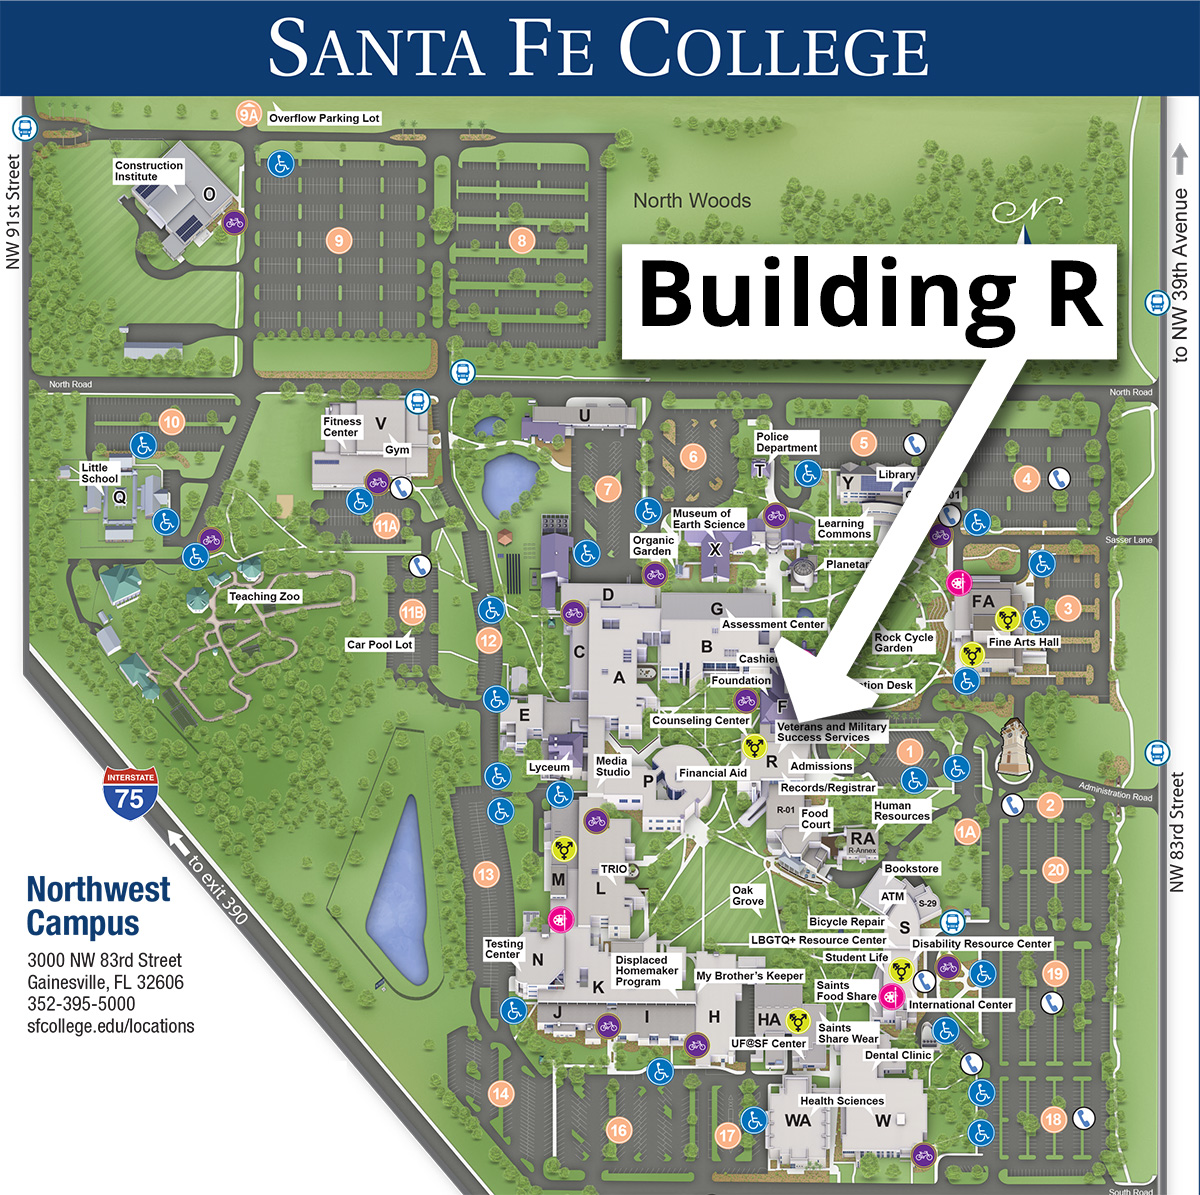 Santa Fe College Building R